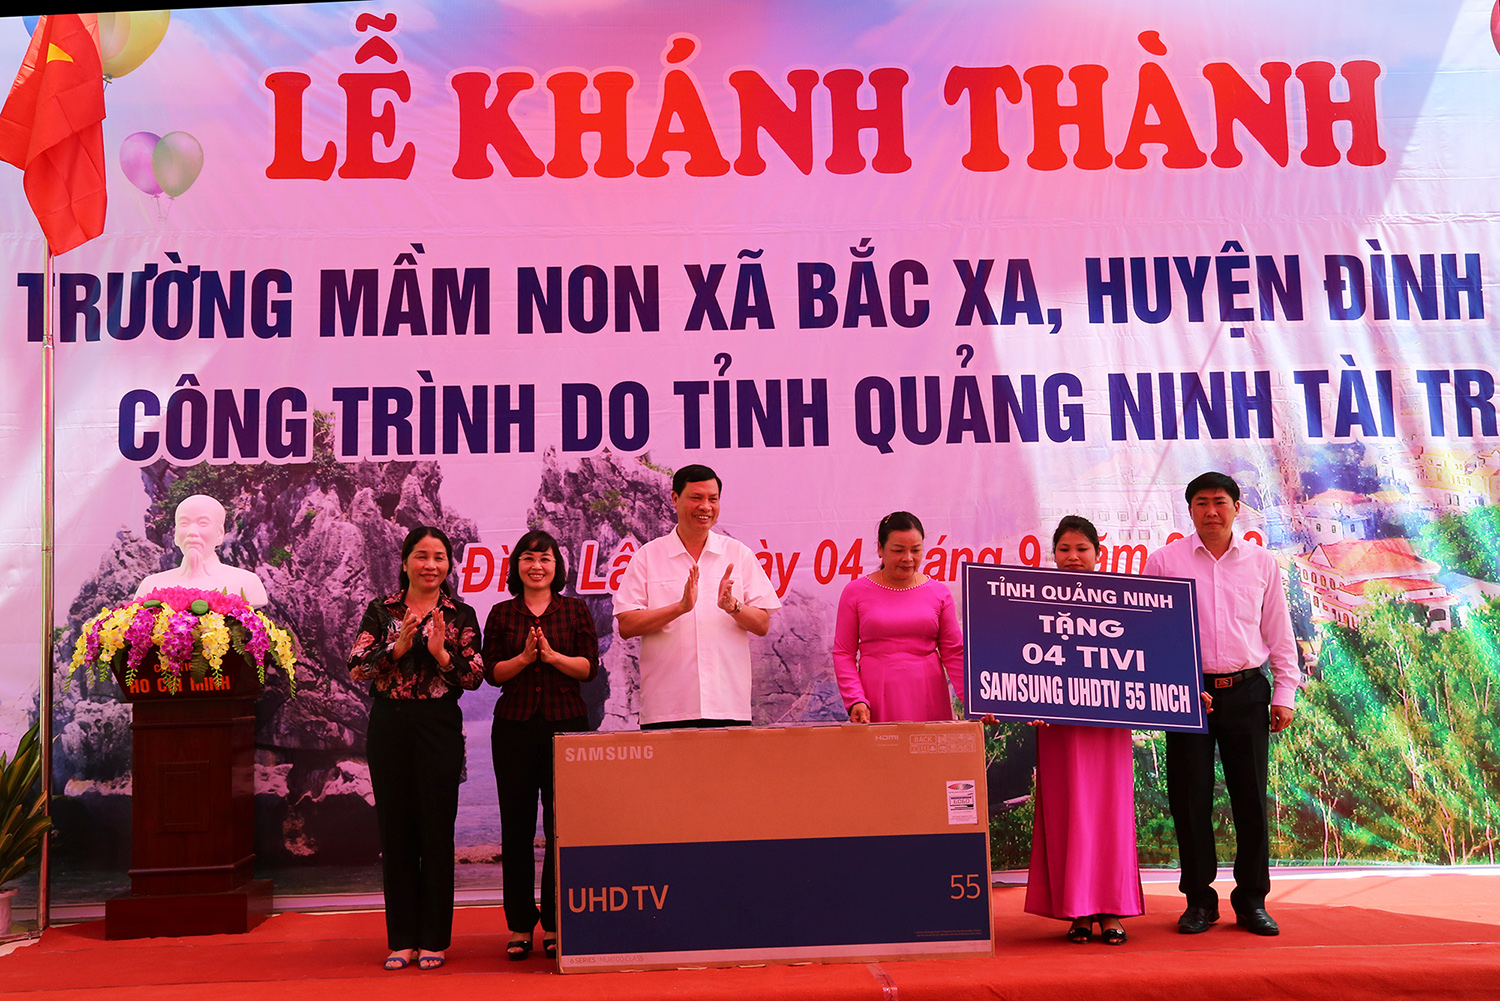 Đồng chí Nguyễn Đức Long, Phó Bí thư Tinh ủy, Chủ tịch UBND tỉnh, trao quà của tỉnh cho Trường Mầm non